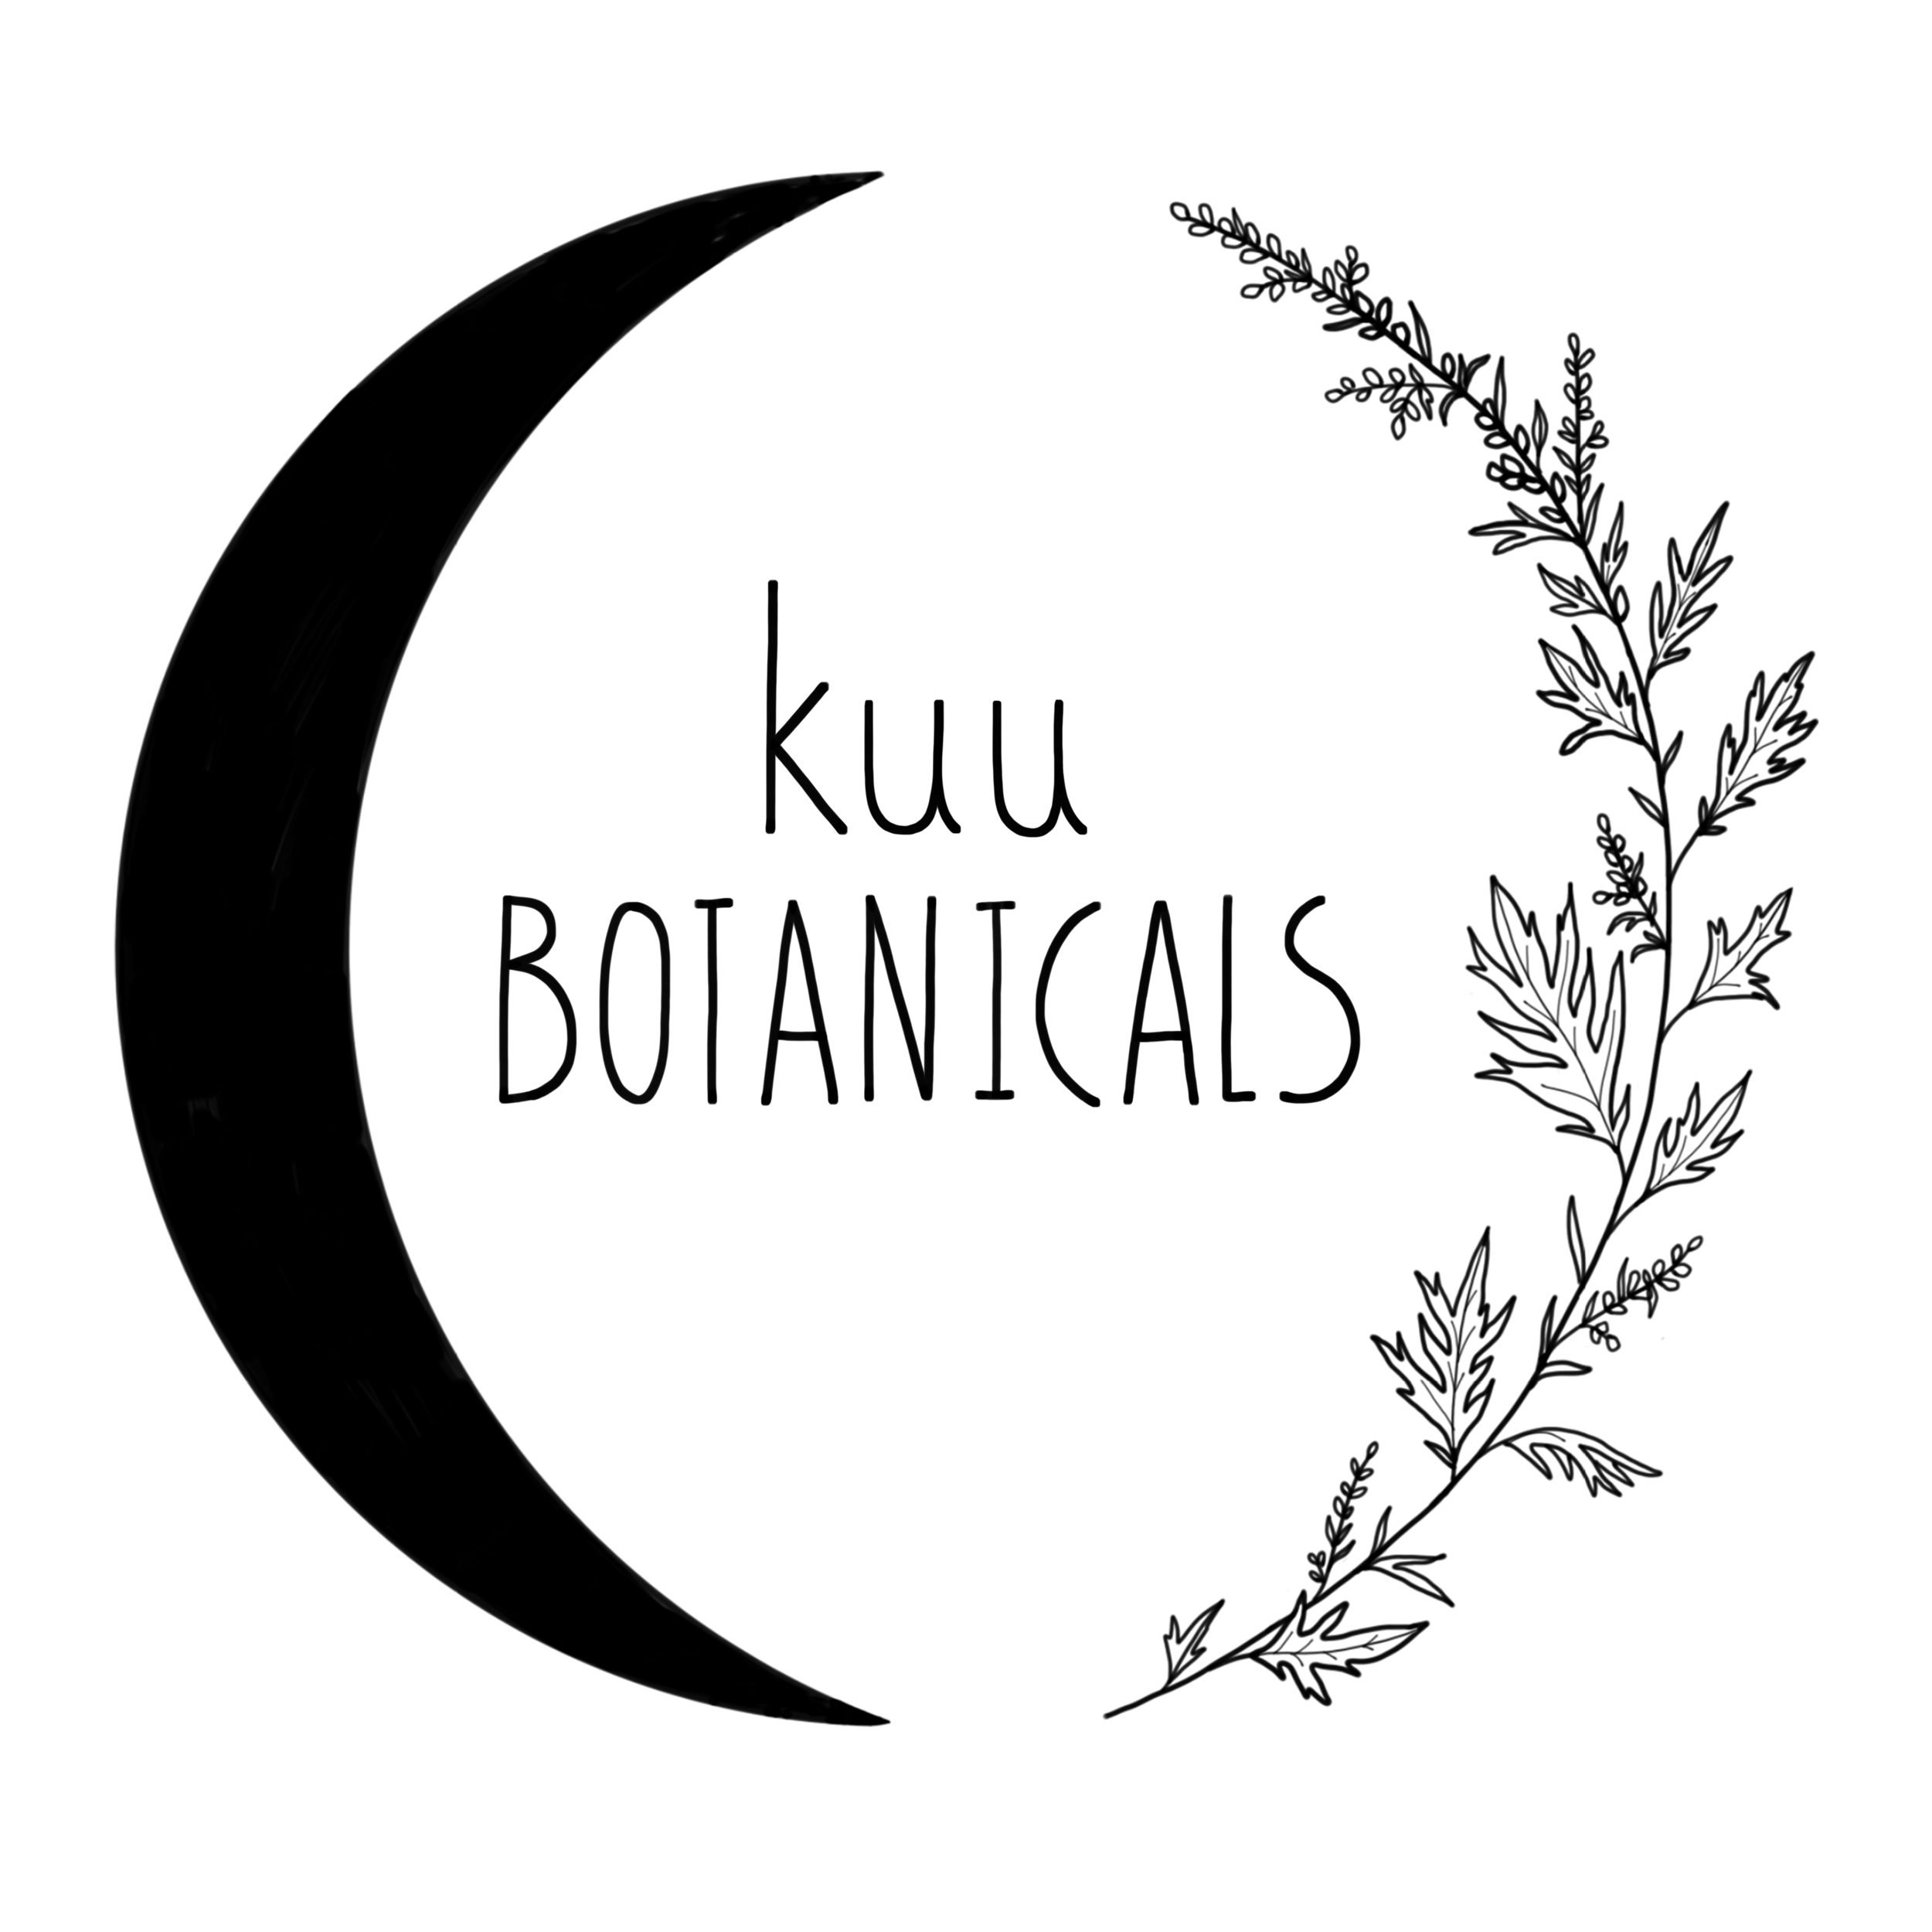  Logo Design for Kuu Botanicals, 2018 